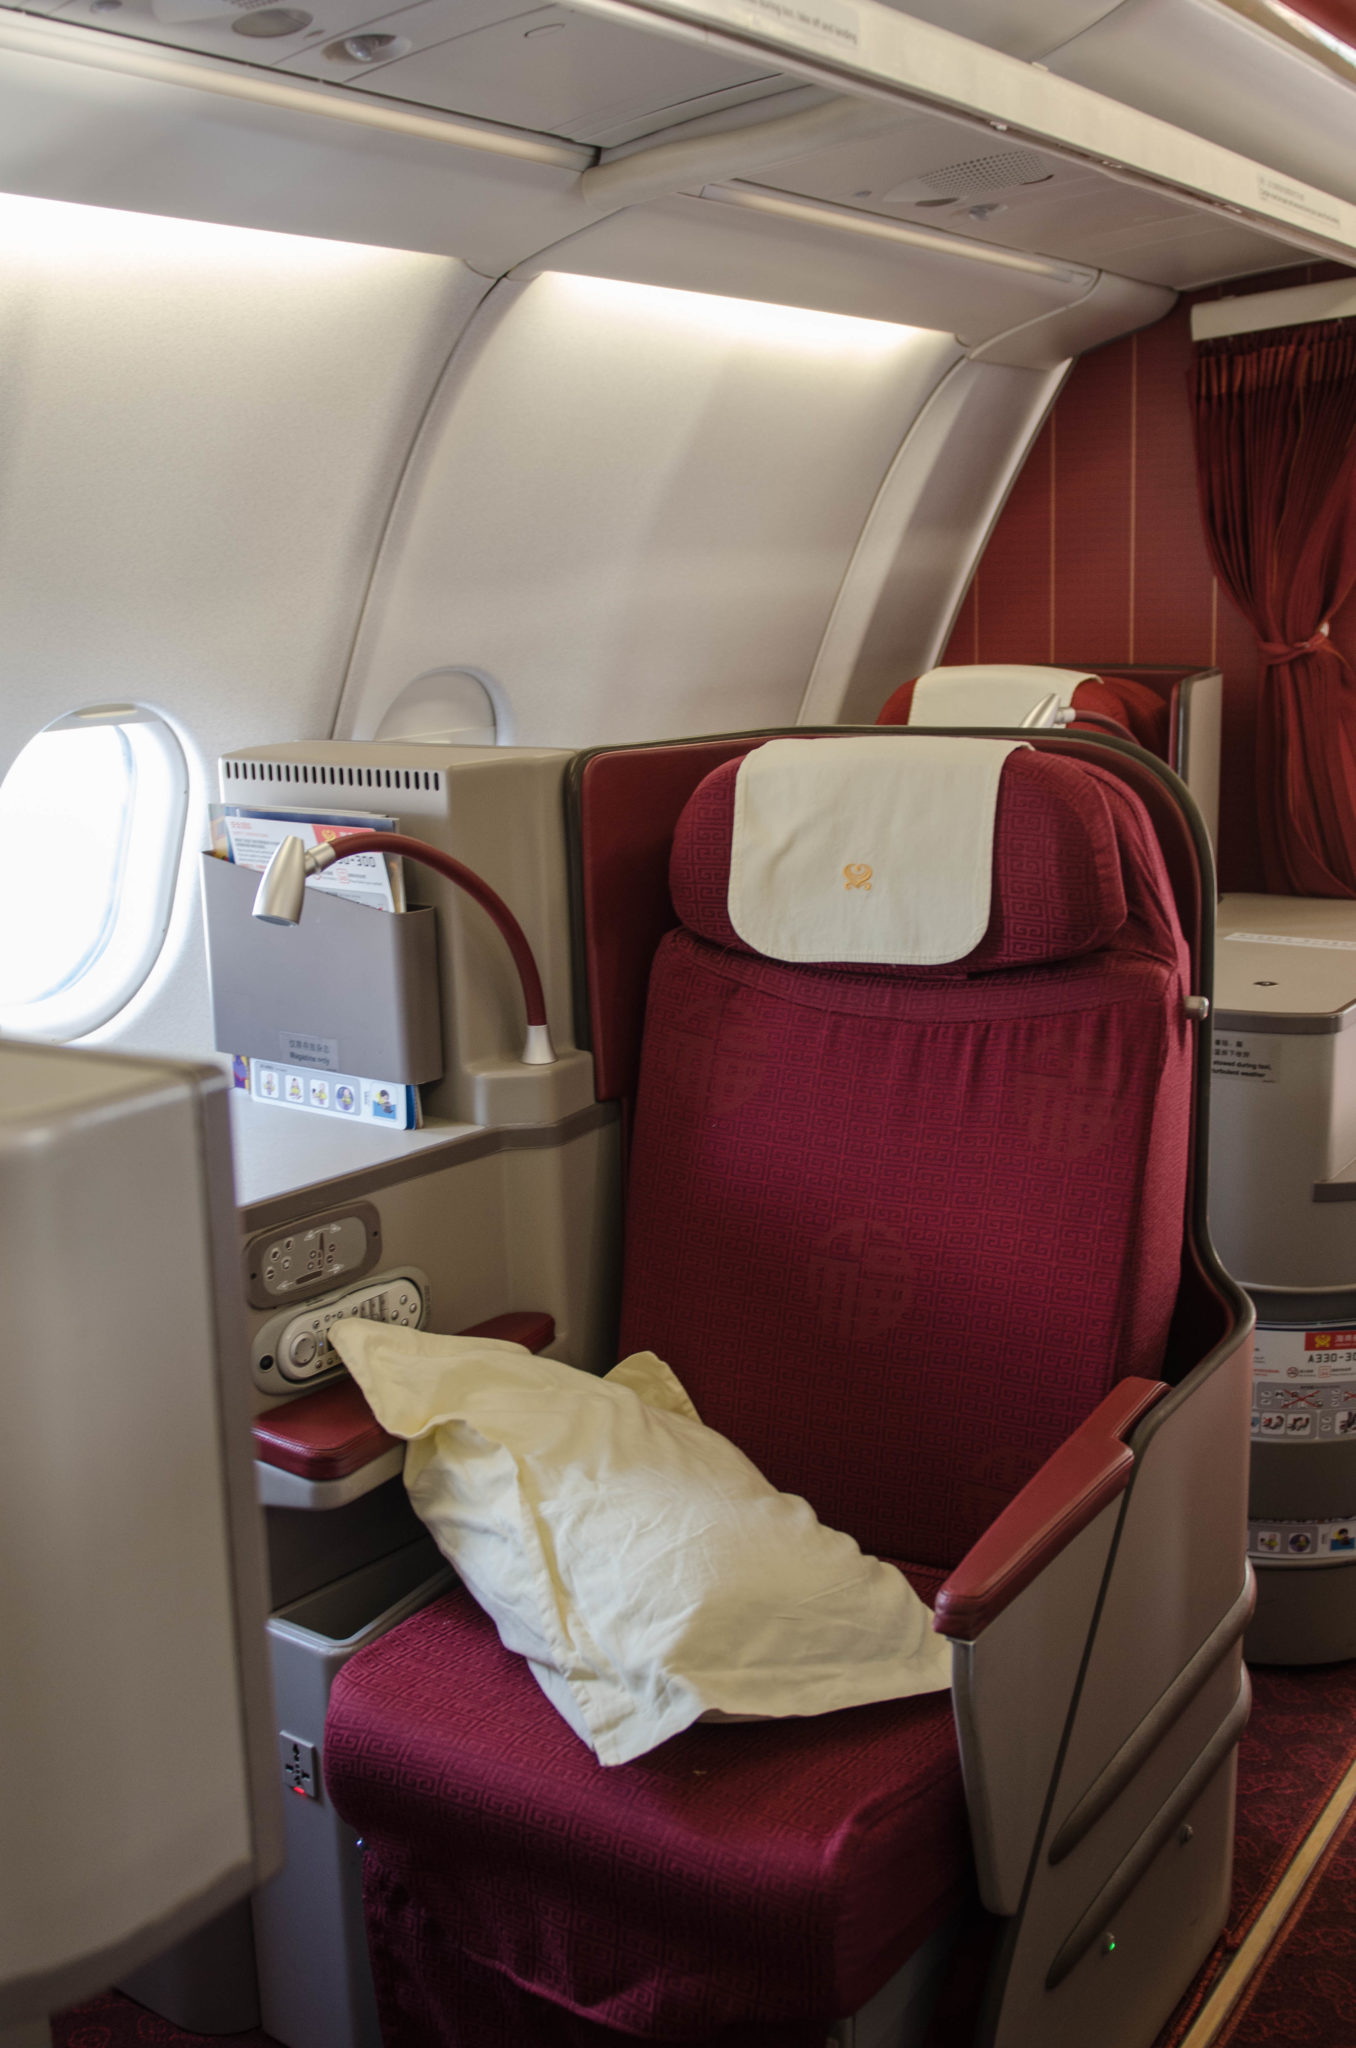 Gemütlich und komfortabel: Die Sitze der Hainan Business Class auf dem Flug von Peking nach Berlin